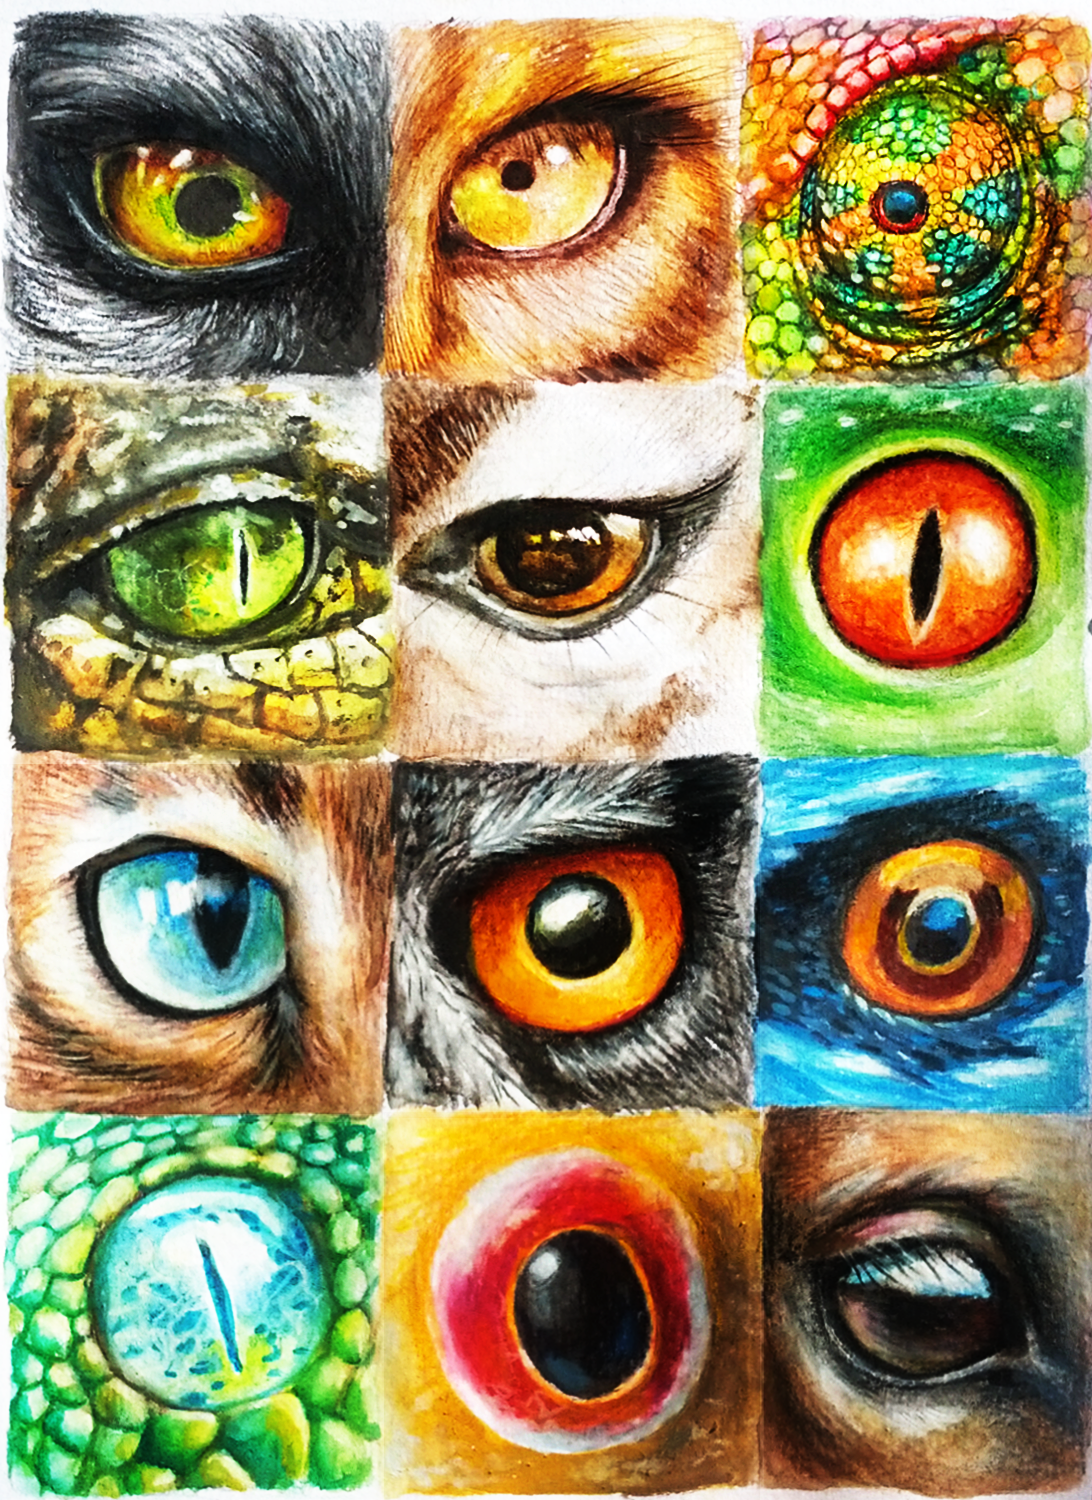 Animal Eyes by Cortoony on DeviantArt